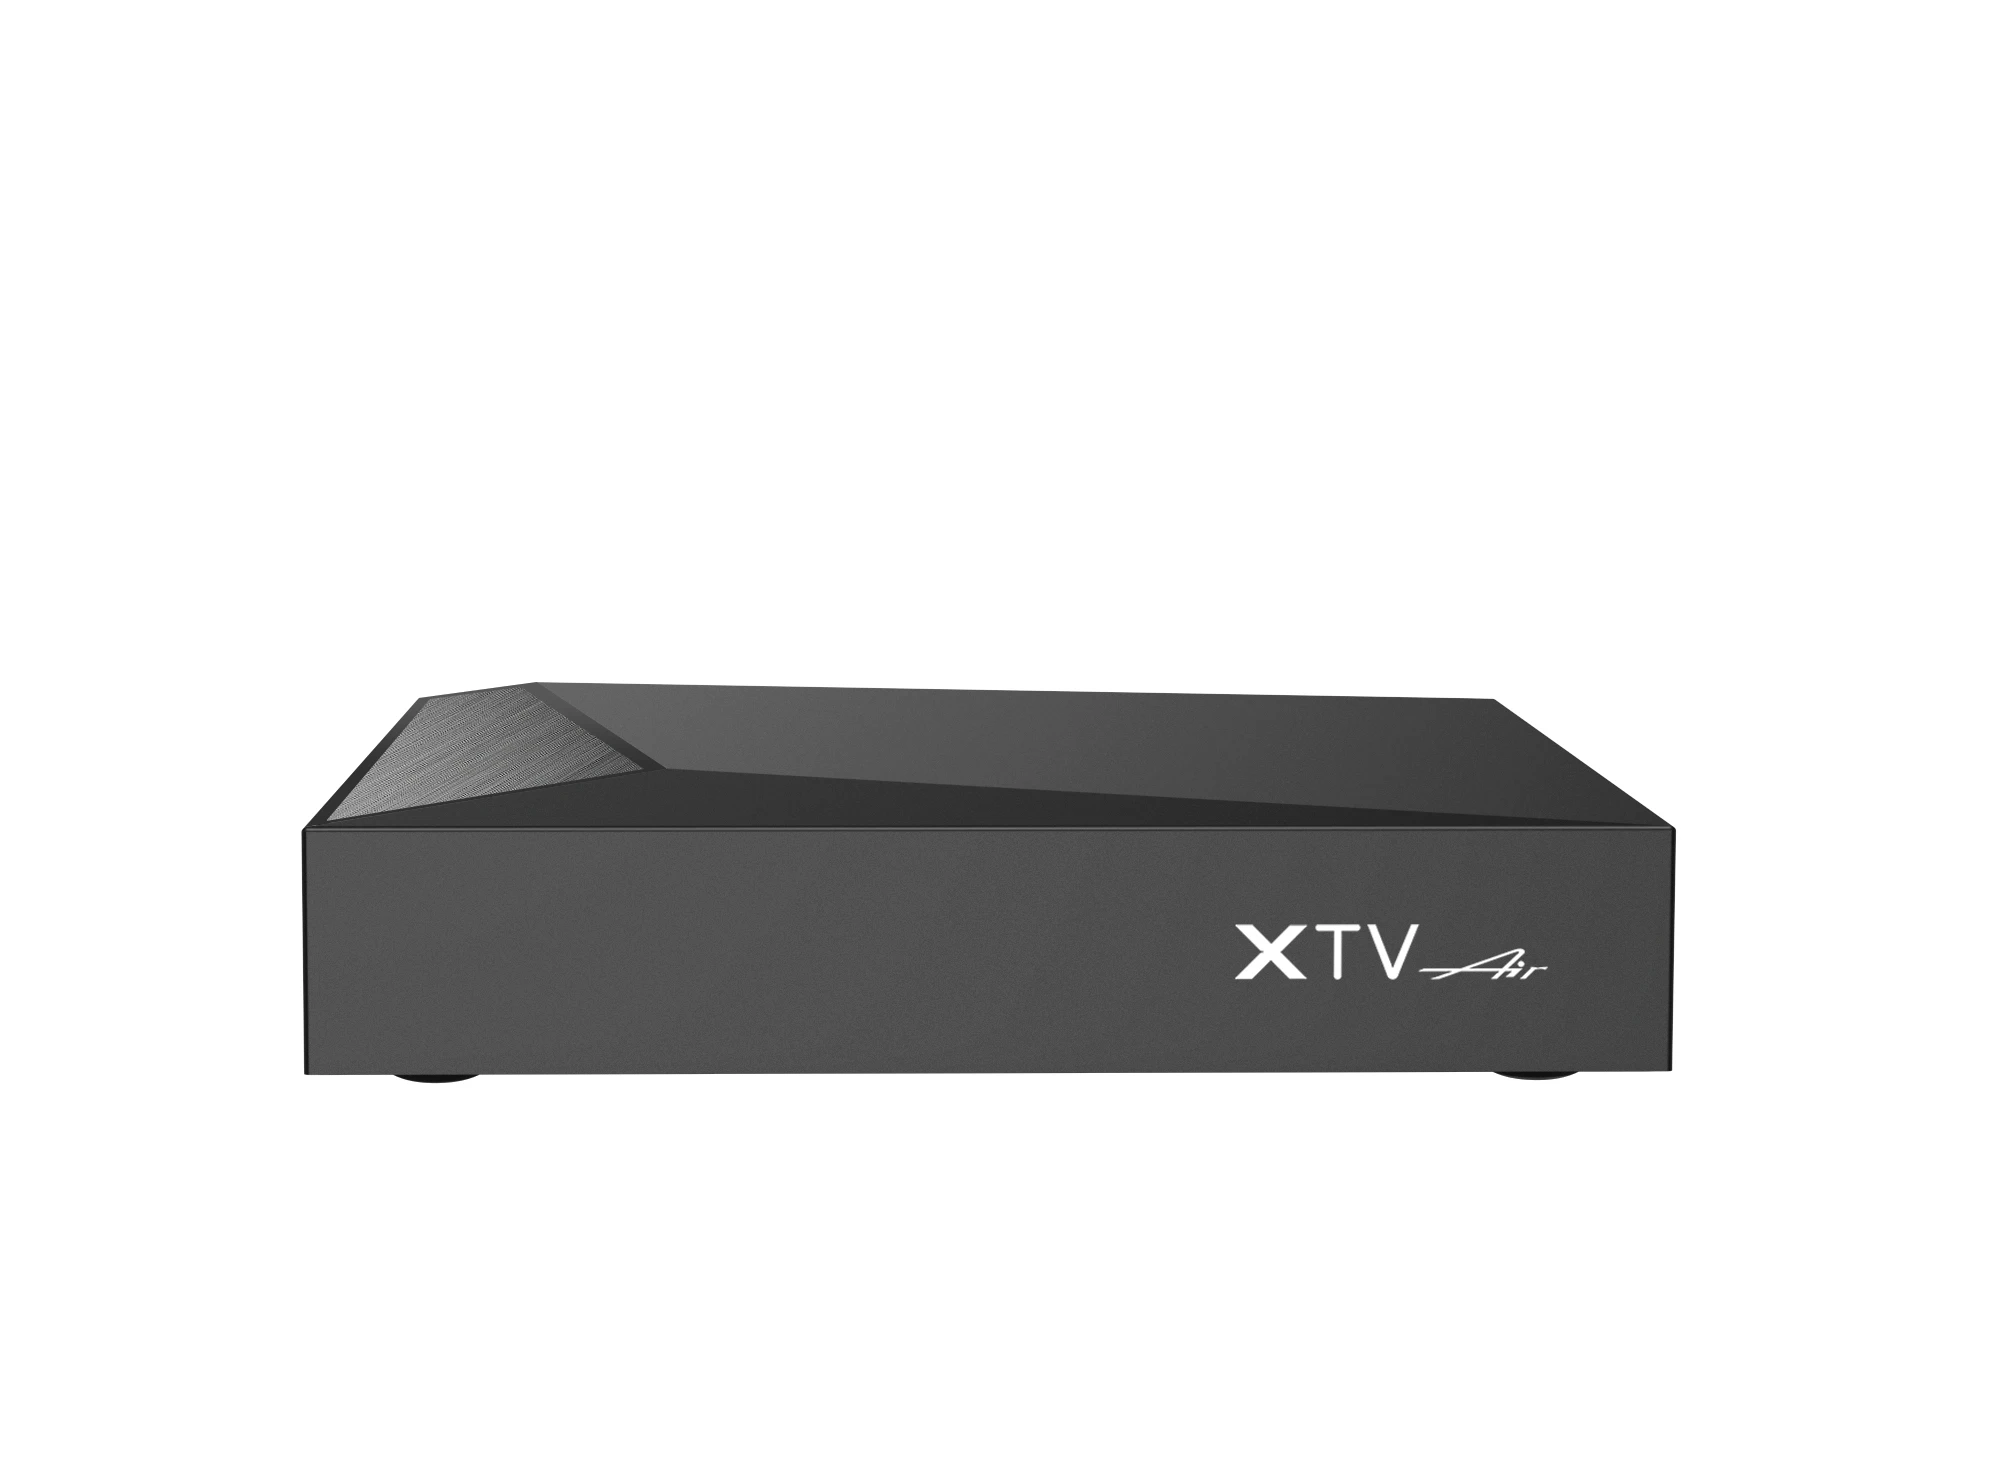 XTV vzduch nový nejchytřejší TV skříňka amlogic S905W2 čtyřnásobný jádra 1.8 ghz 4K HDR+ brian wayne transeau HD LAN 100M AV1 chytrá TV skříňka XTVAIR